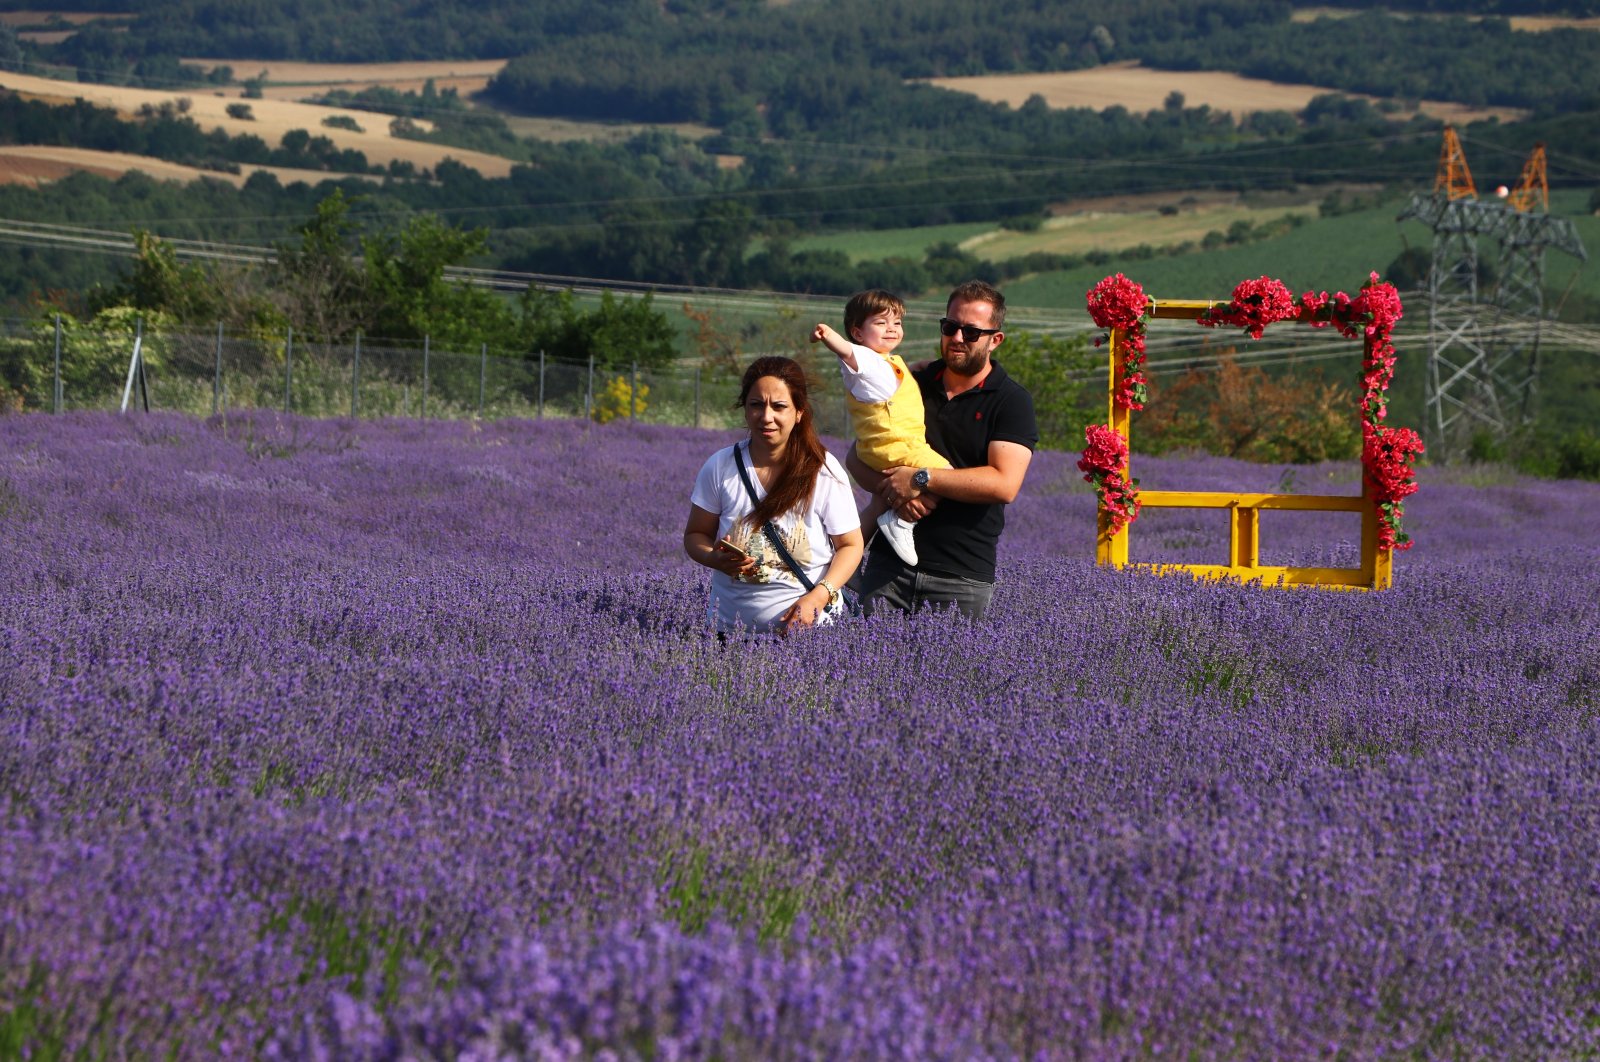 Ladang lavender yang indah menarik lebih dari 1 juta pengunjung ke Tekirdağ Türkiye